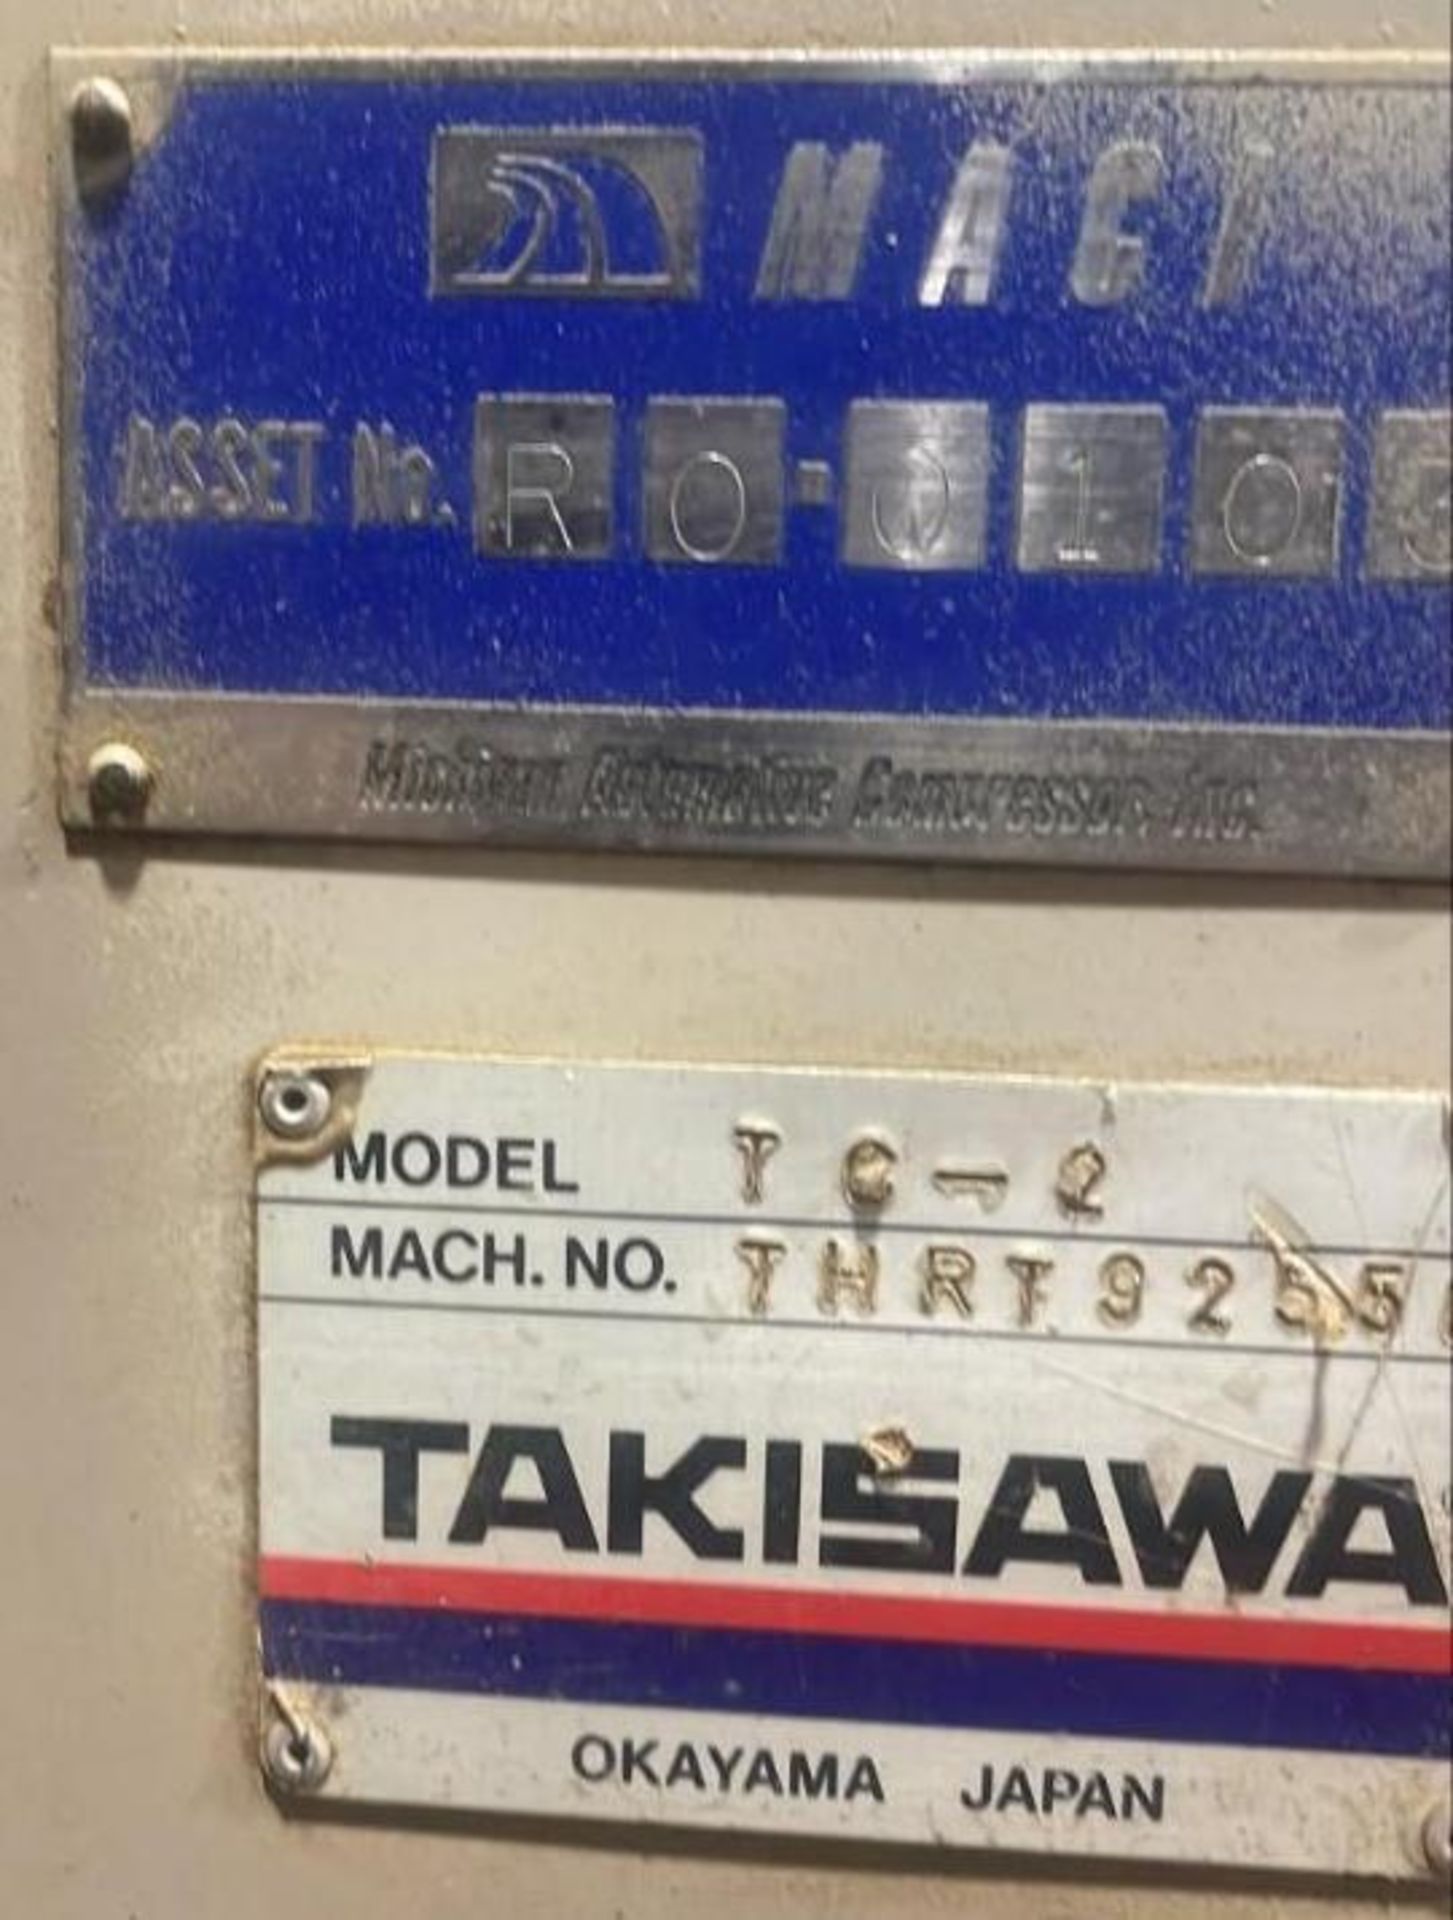 Takisawa TC-2 CNC Lathe - Image 2 of 6